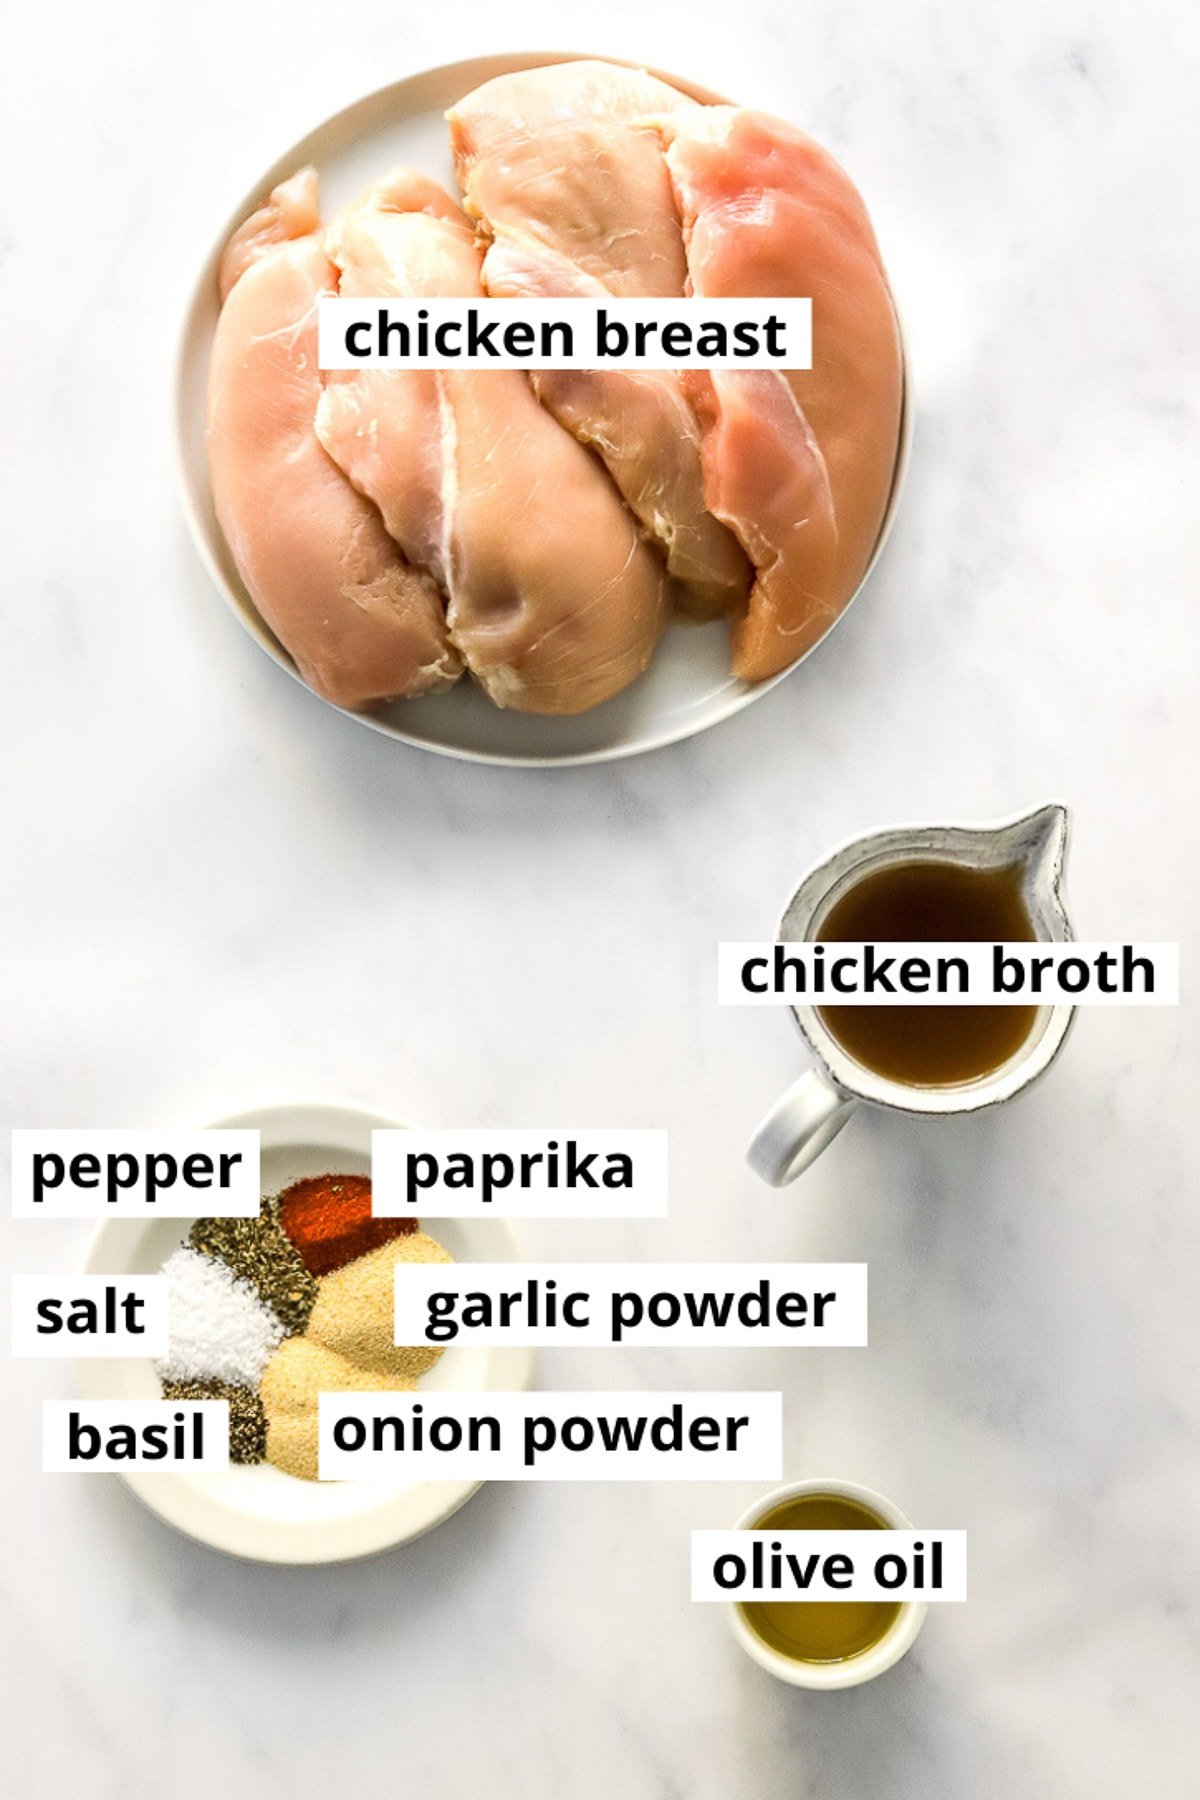 Chicken breasts, chicken broth, oil, paprika, dried basil, salt, pepper, garlic powder, onion powder.